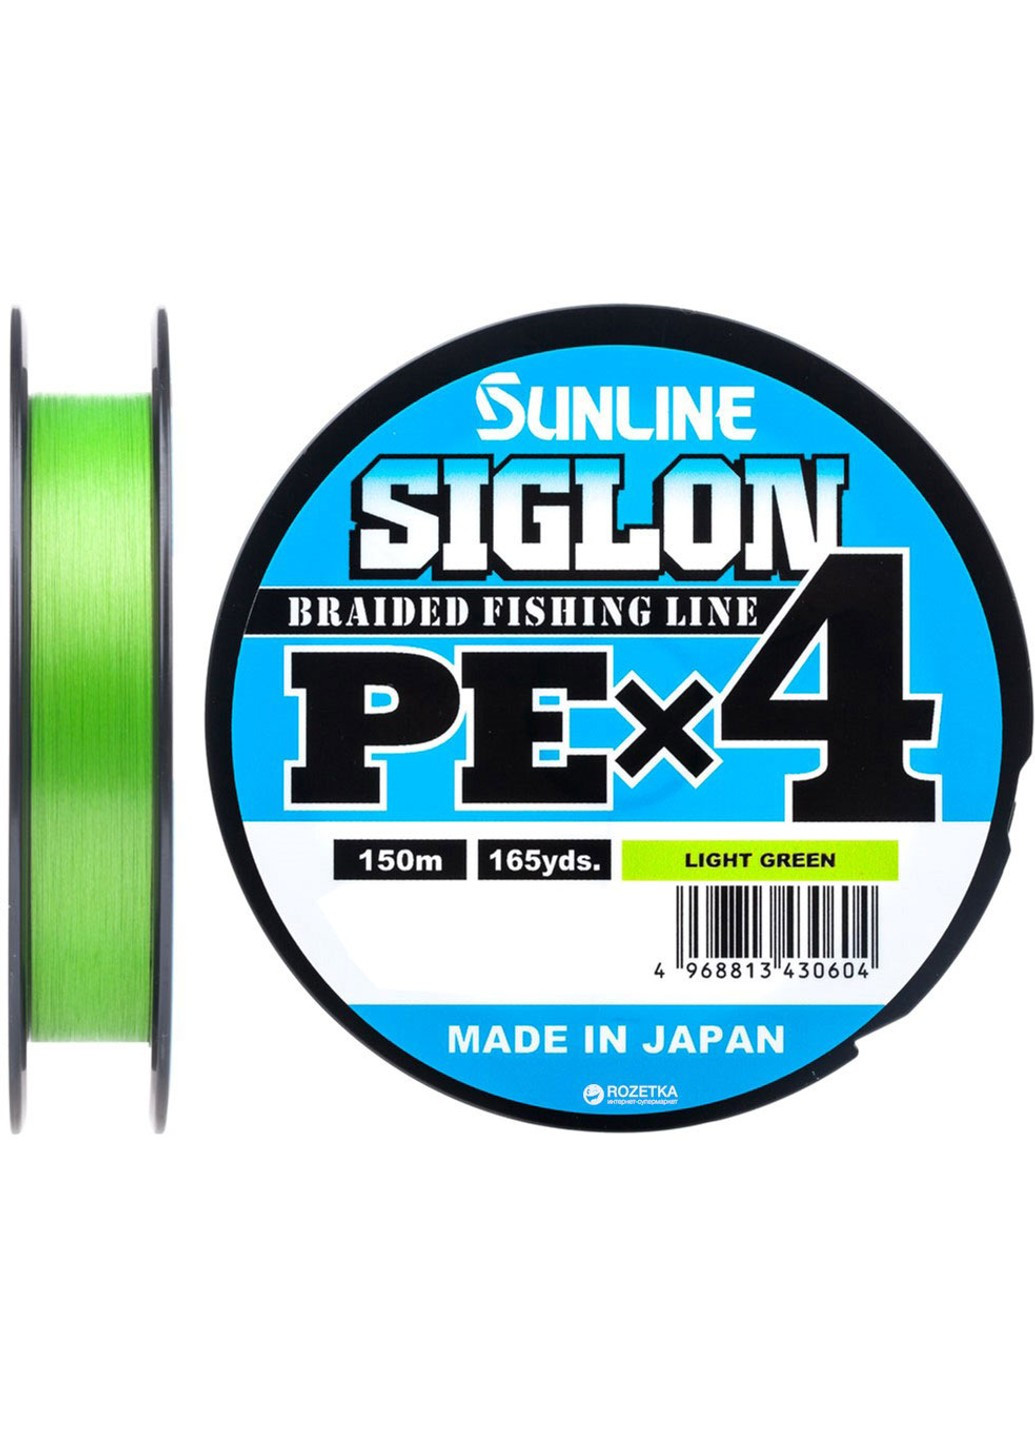 Шнур Siglon PE х4 150m (салат.) #0.8/0.153mm 12lb/6.0kg (1658-09-05) Sunline (252468377)